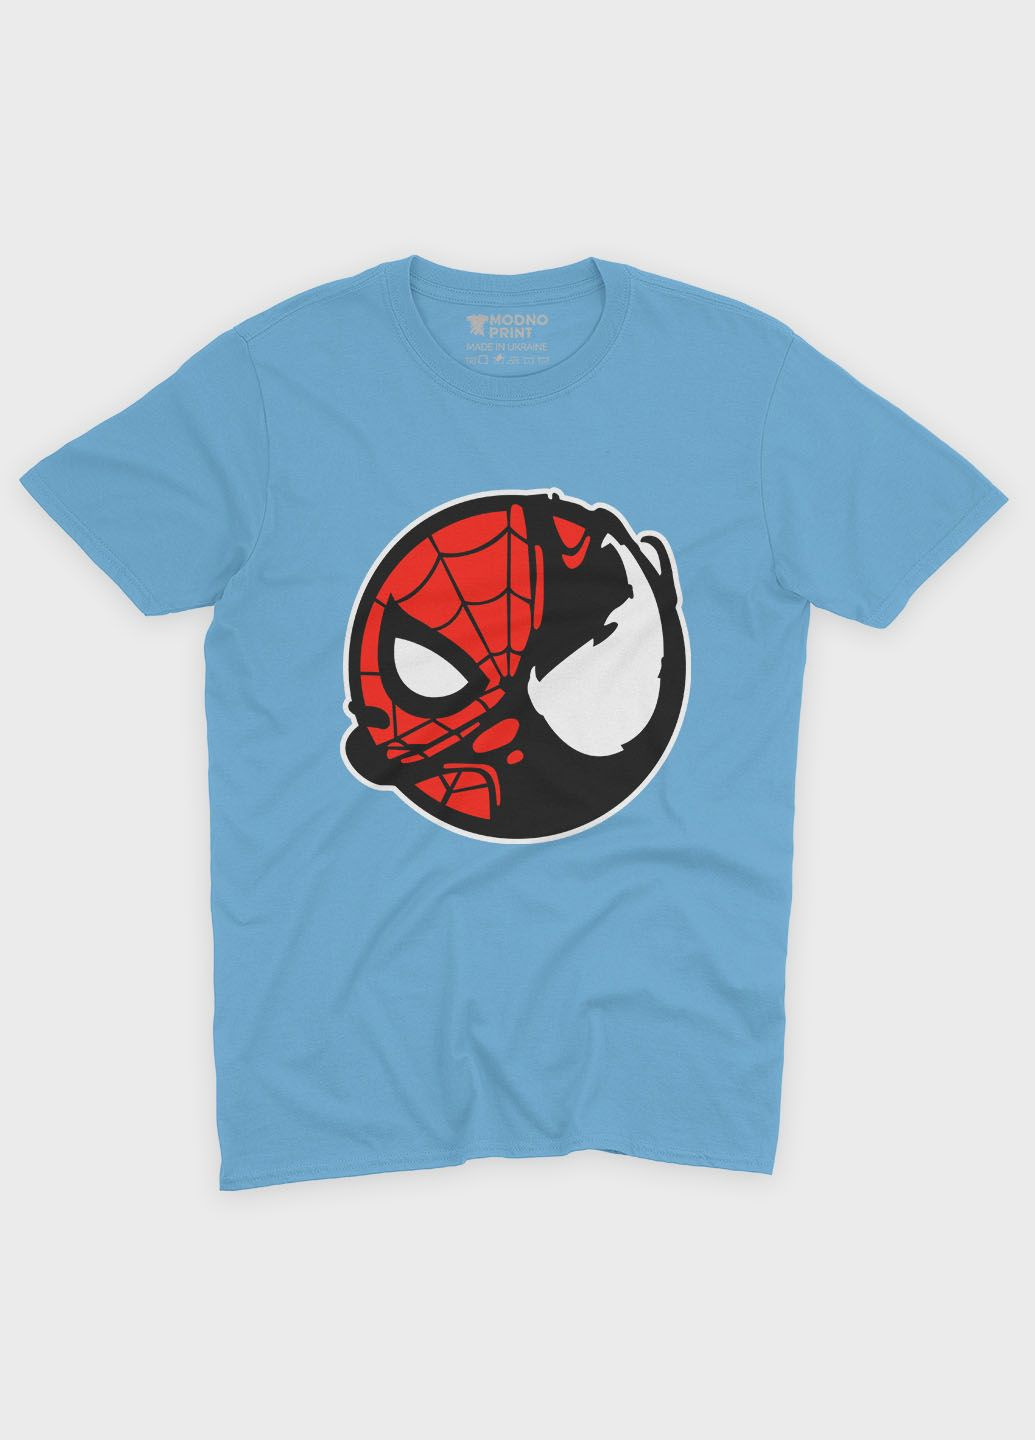 Голубая демисезонная футболка для мальчика с принтом супергероя - человек-паук (ts001-1-lbl-006-014-100-b) Modno